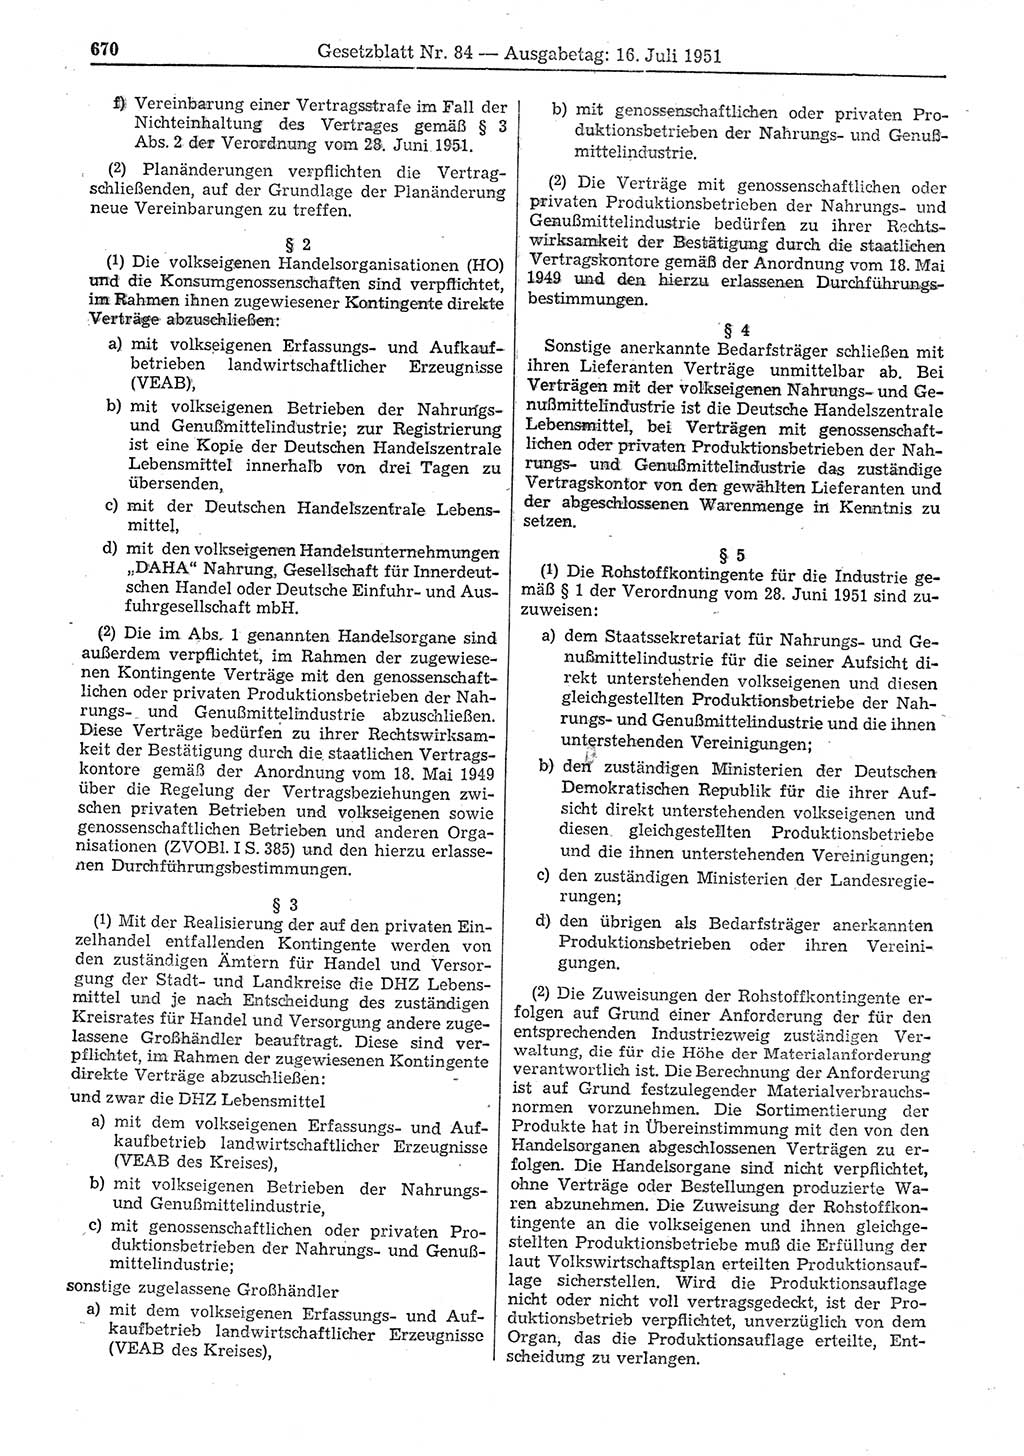 Gesetzblatt (GBl.) der Deutschen Demokratischen Republik (DDR) 1951, Seite 670 (GBl. DDR 1951, S. 670)